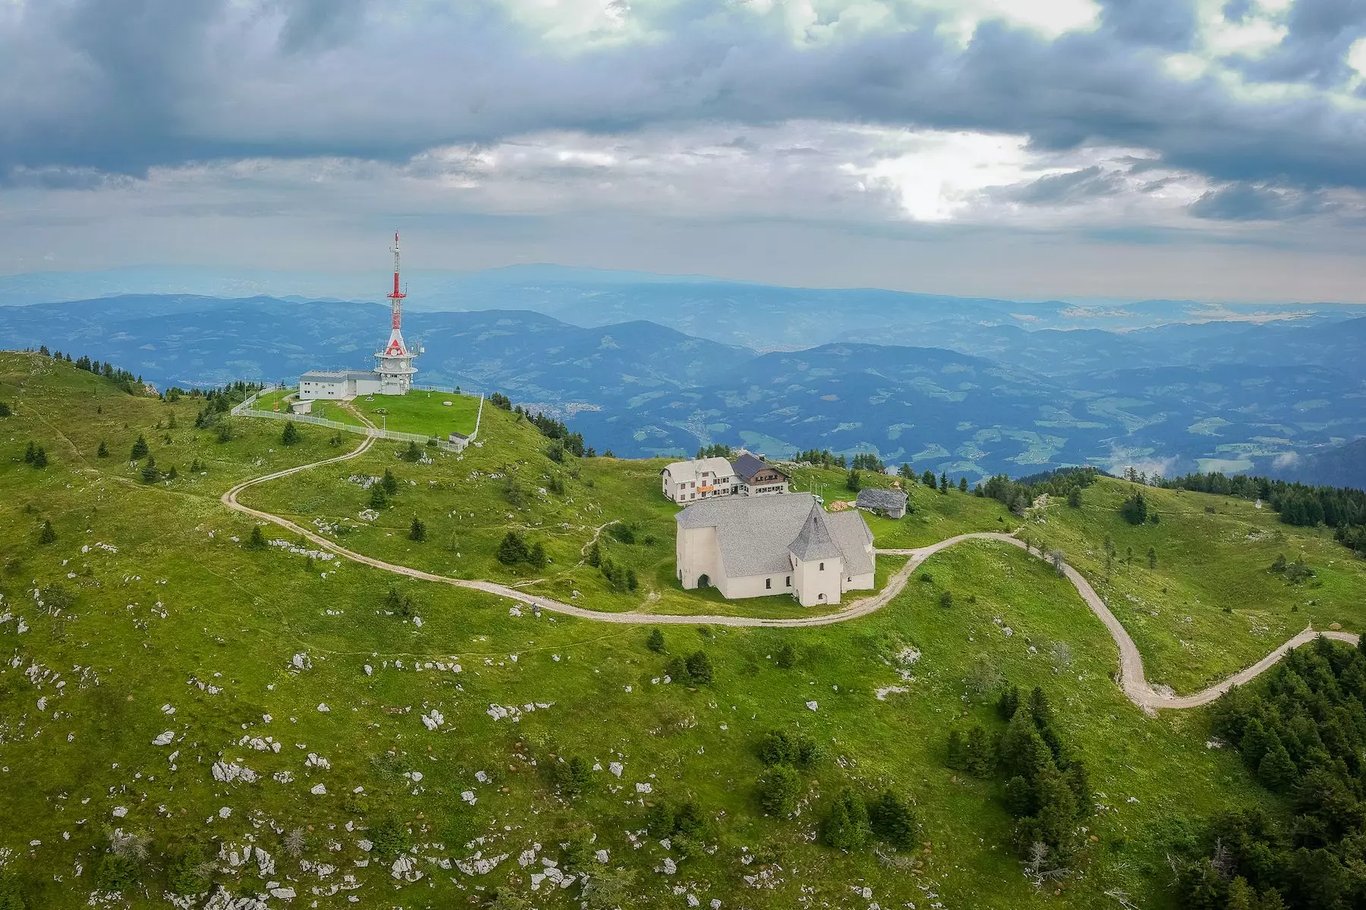 Pohorje mountains next to Maribor, Slovenia